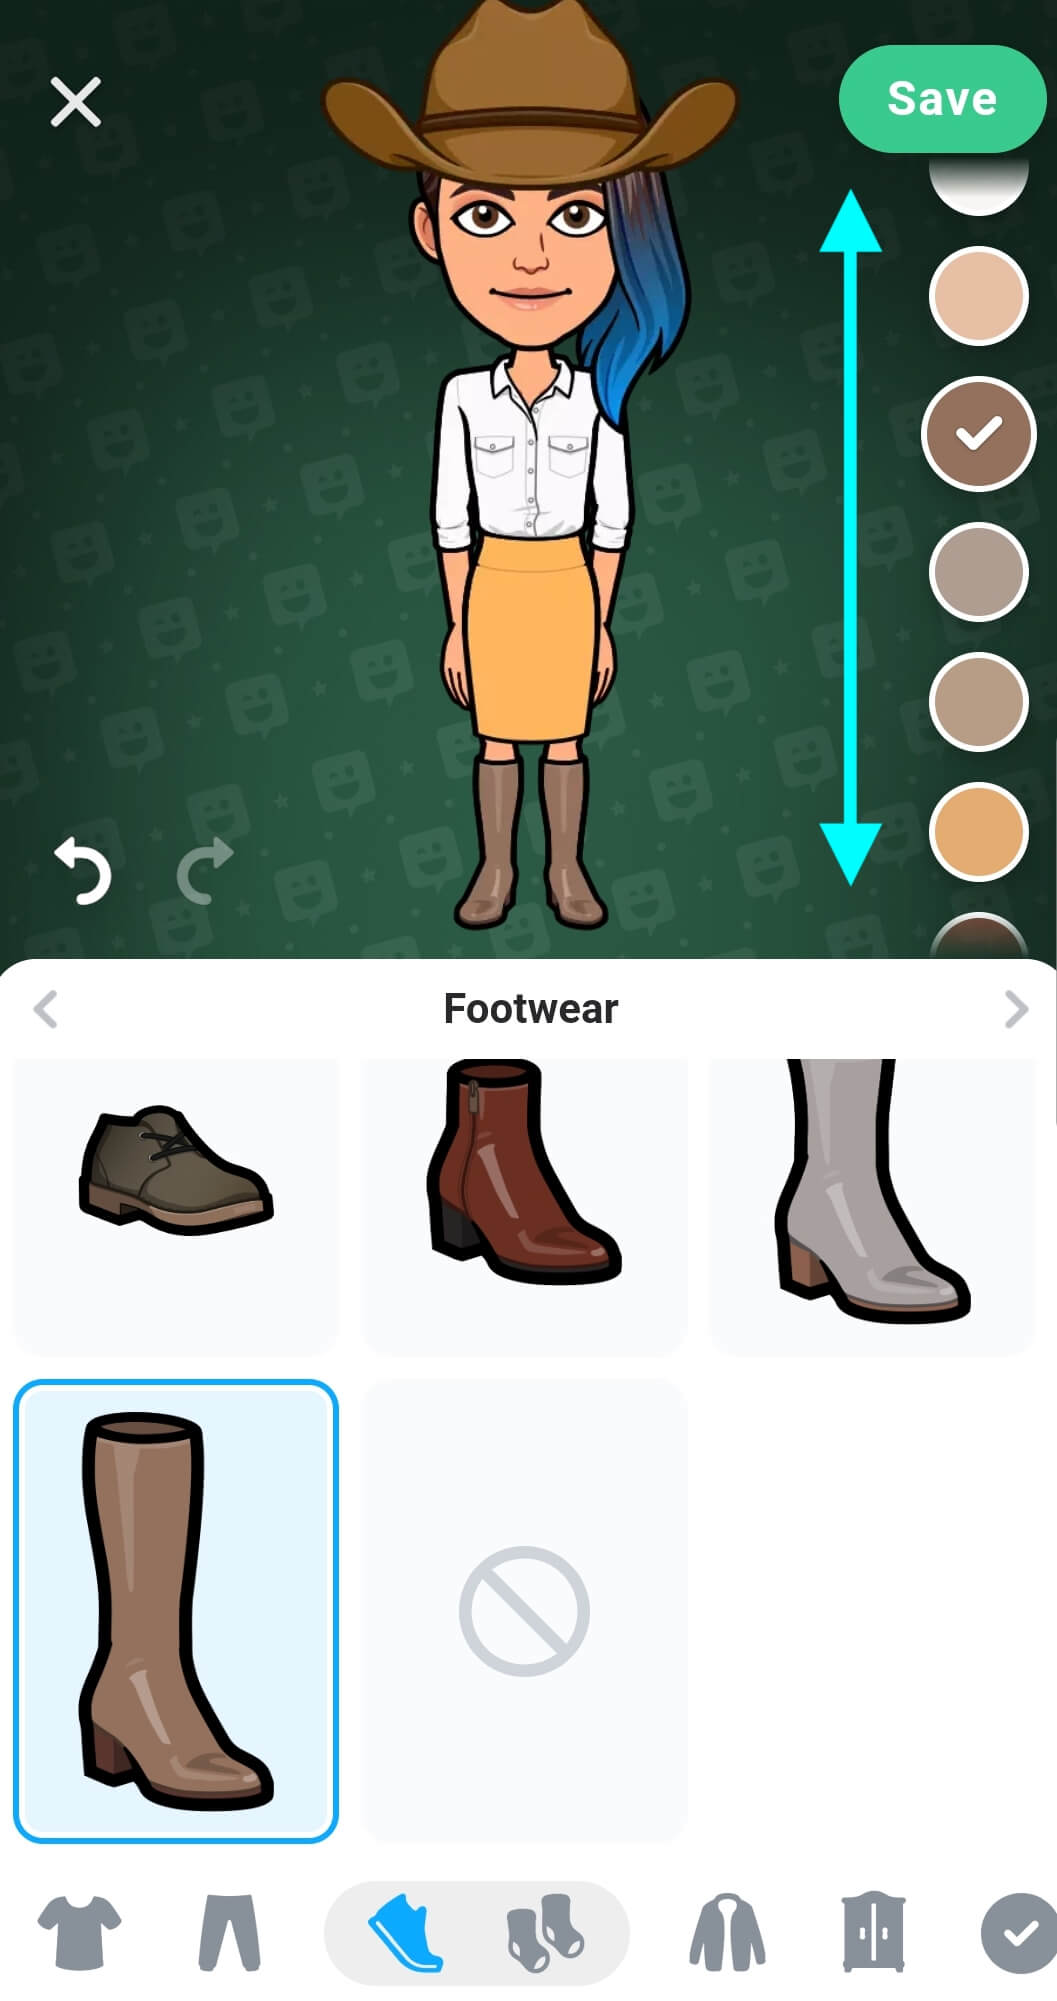 Maintenant que l'avatar porte des bottes, la palette de couleurs à droite possède des flèches indiquant de glisser vers le haut ou le bas pour plus d'options de couleurs